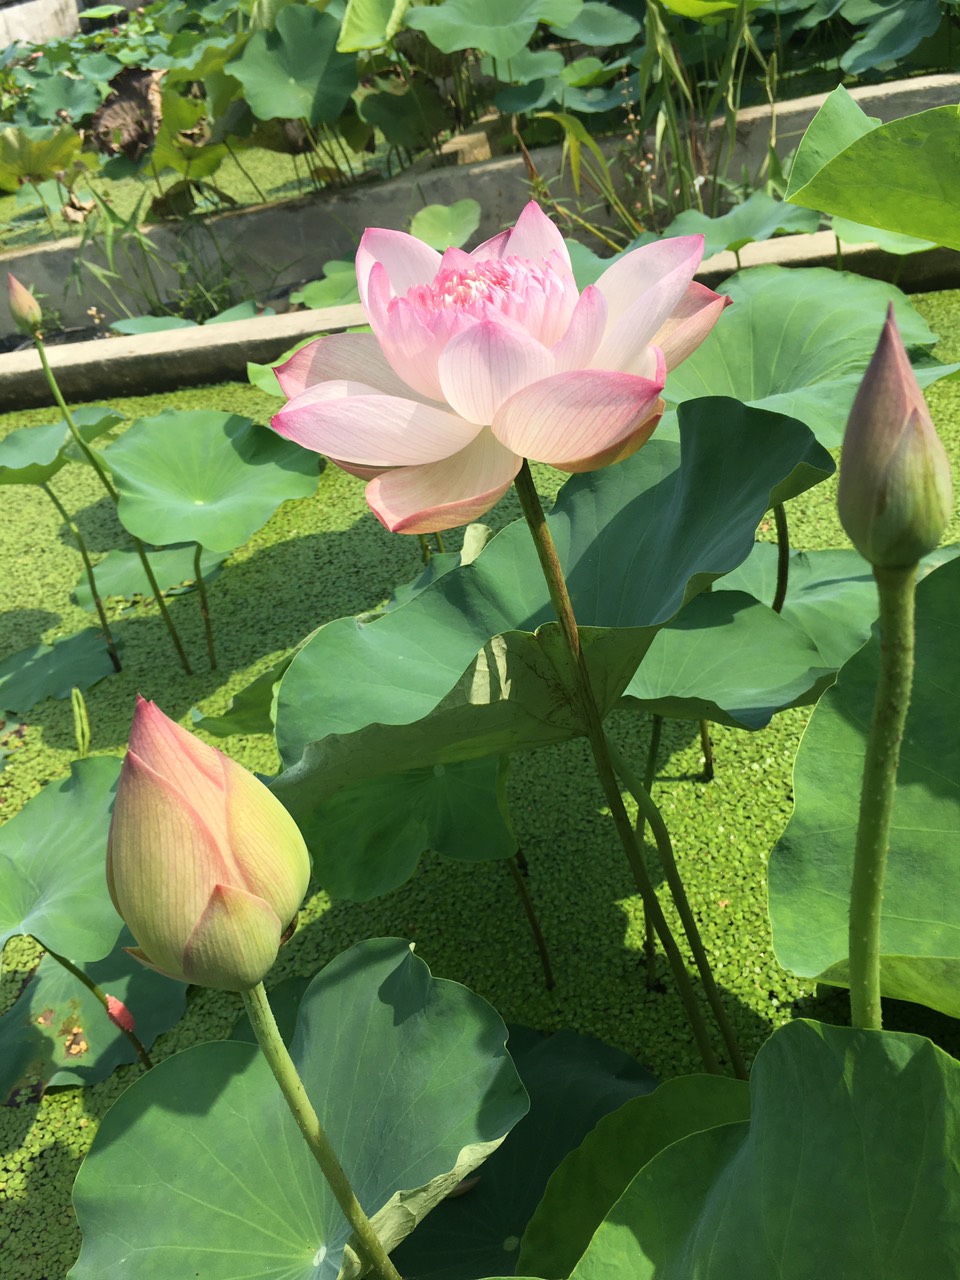 Sen Super Lotus rất đặc biệt , cánh nhẹ phớt hồng nhưng từ 4-5 ngày sau khi nở cánh sen sẽ chuyển thành màu trắng muốt cực kỳ đẹp